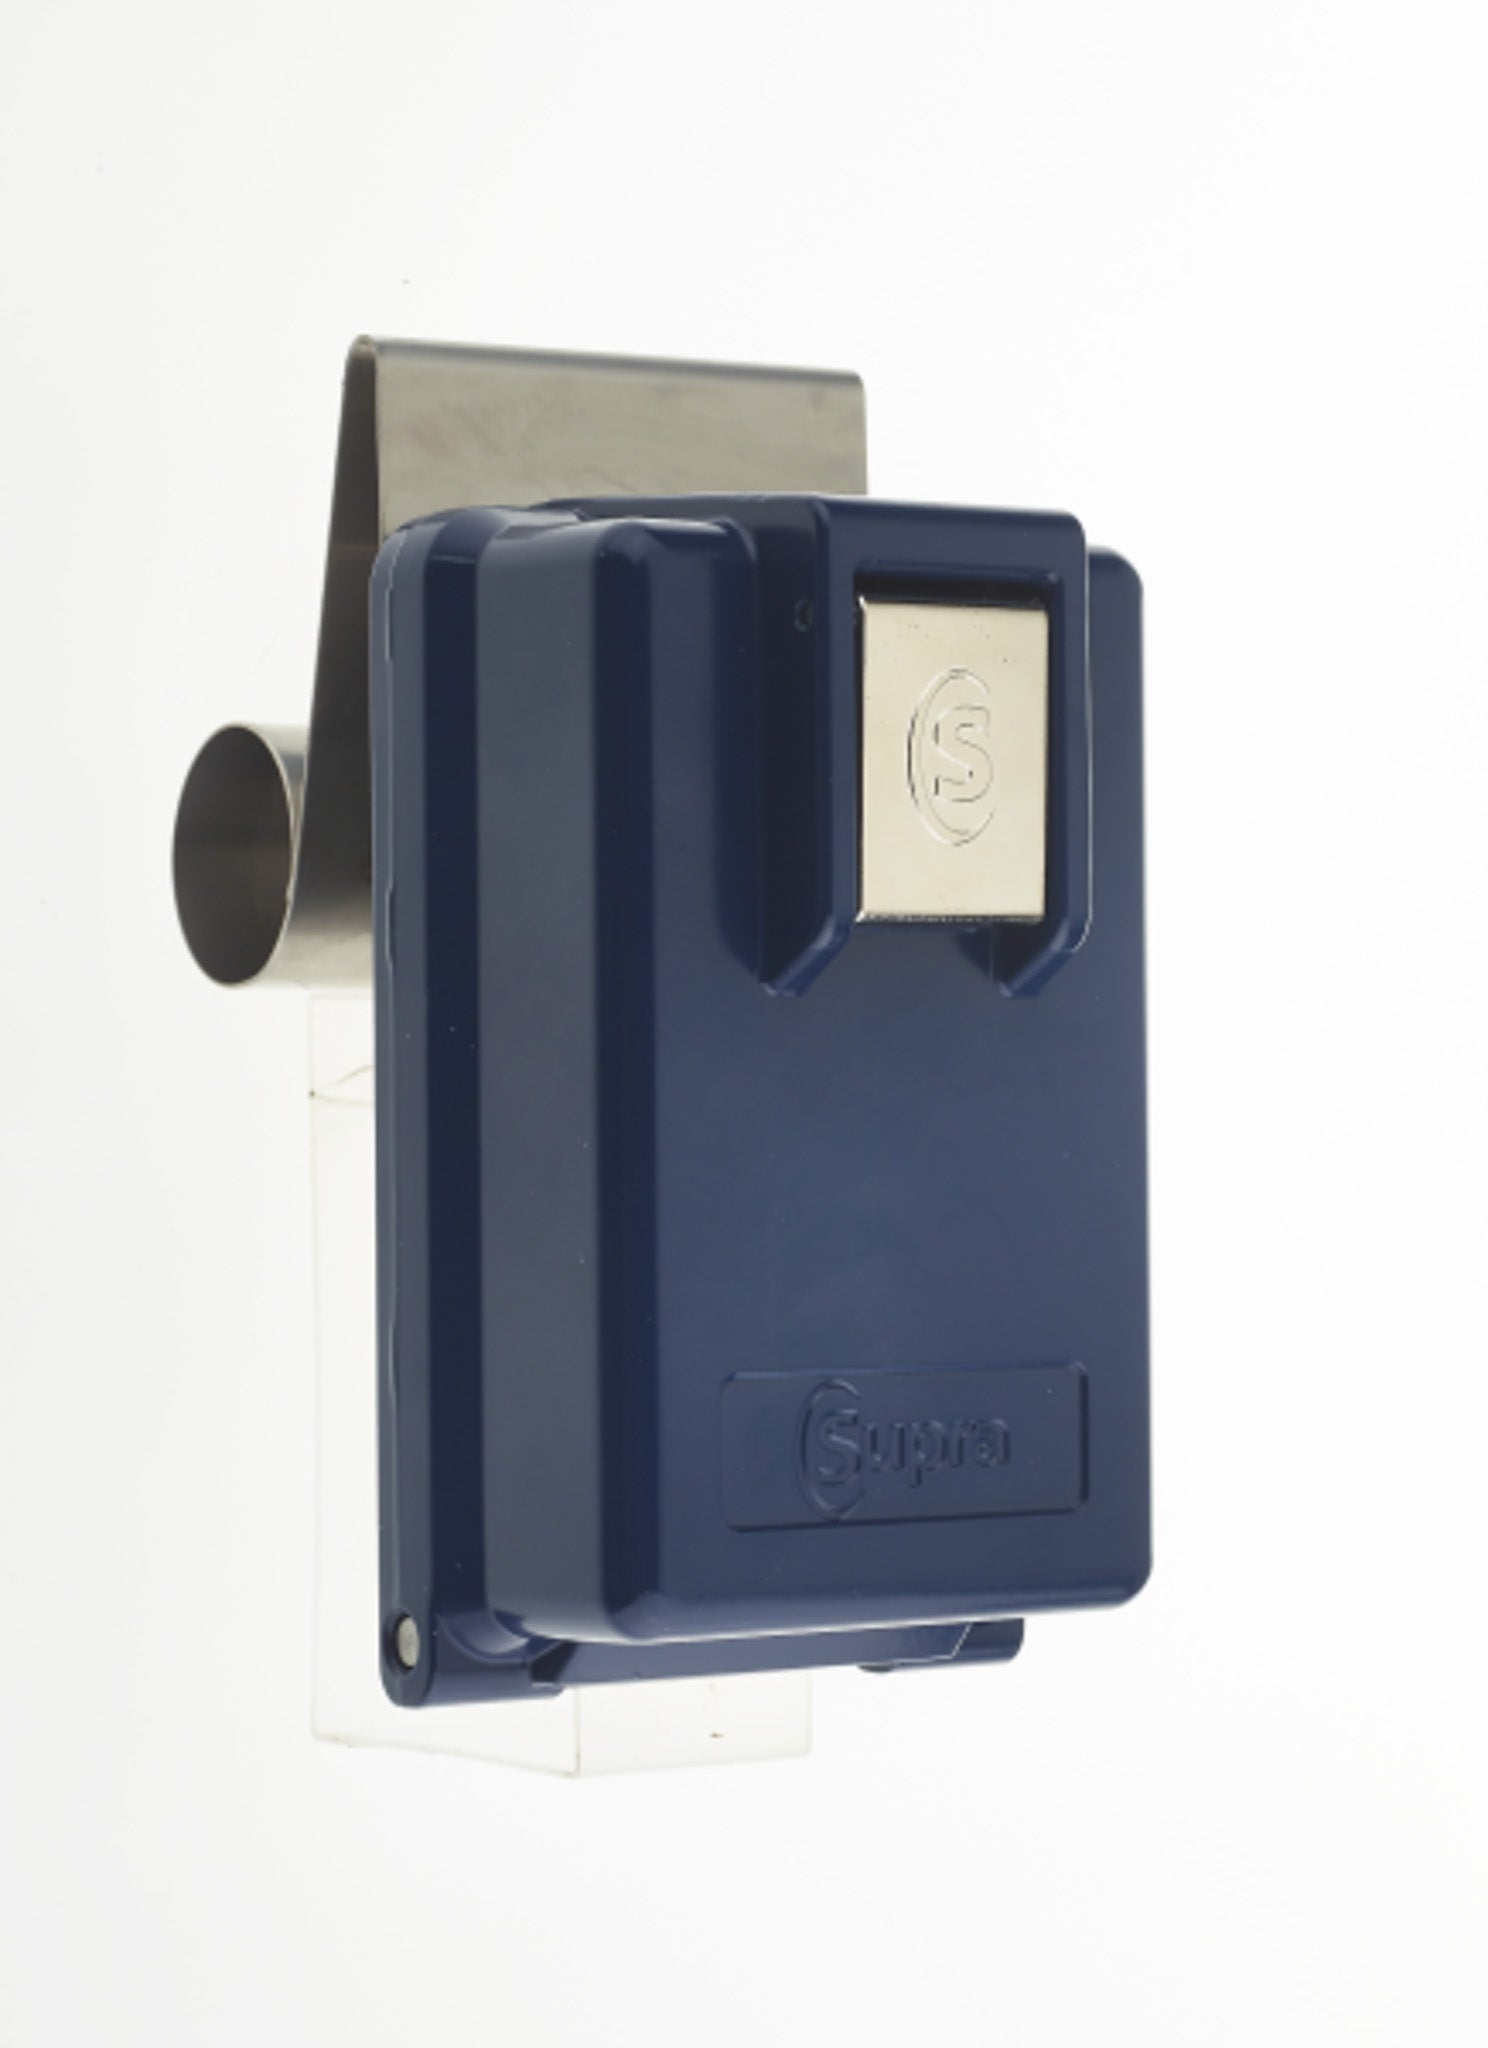 Closed blue Supra Indigo key safe made from Zinc Alloy for automotive